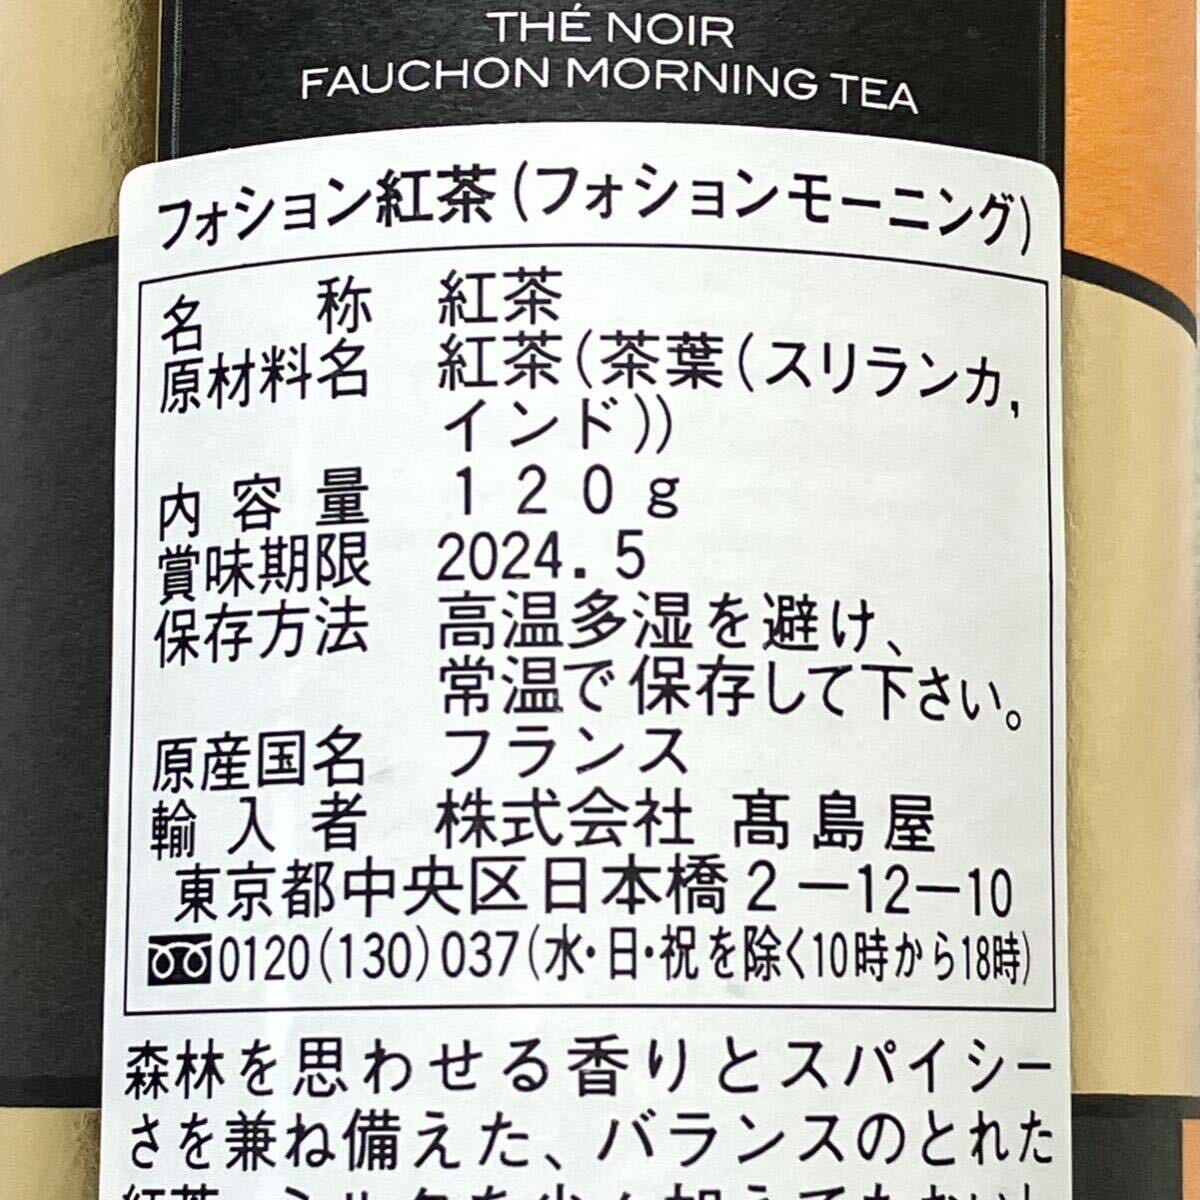 ◆送料込 即決◆ フォション 紅茶 3缶セット フォションモーニング_画像3